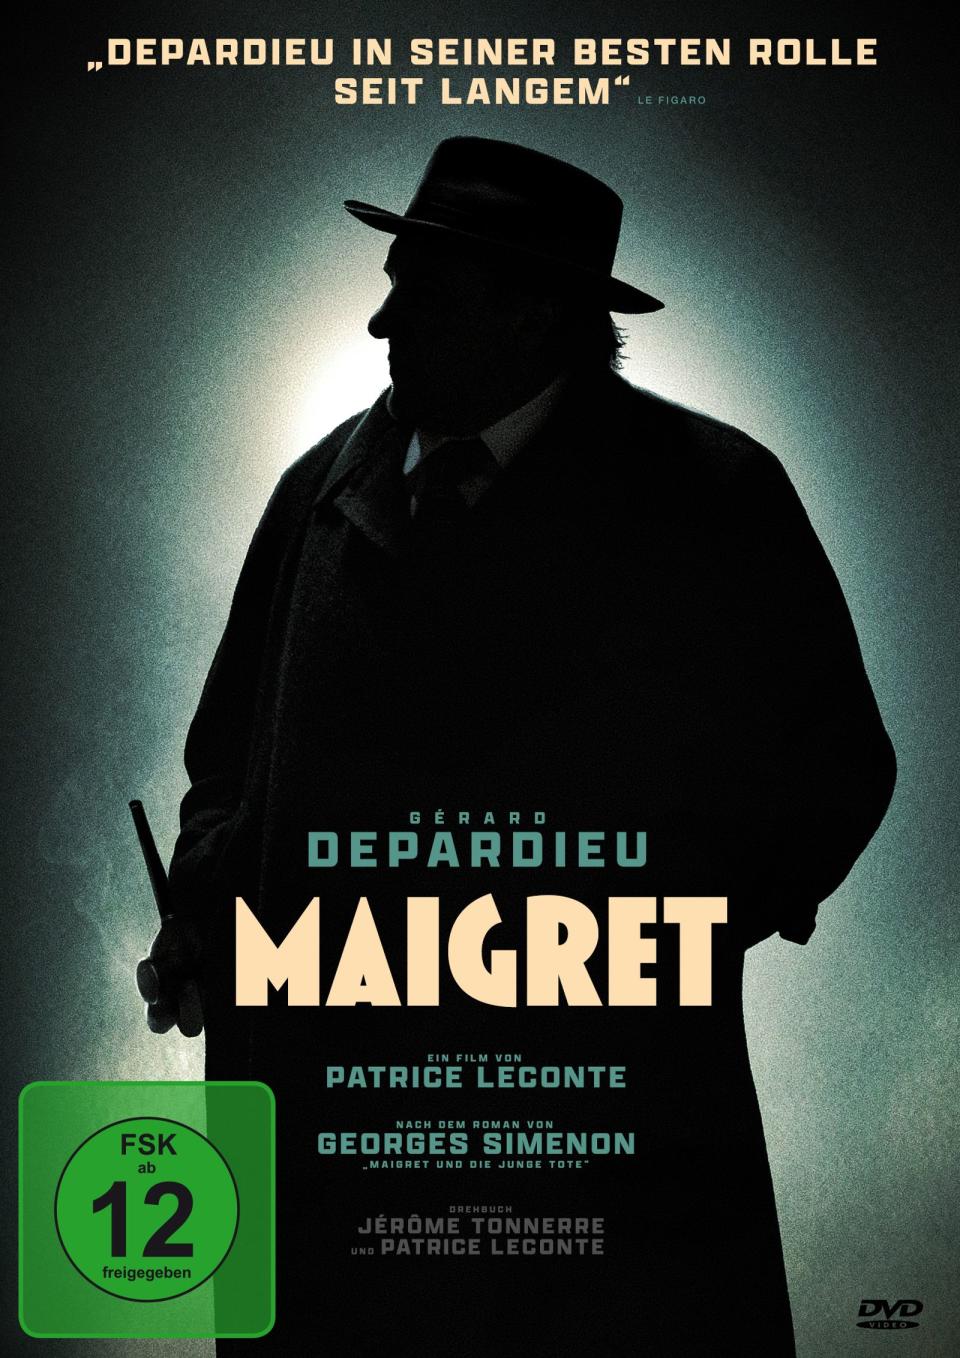 Gérard Depardieu spielte schon viele große Rollen, diese hier gehört definitiv dazu: Er verkörpert den Titelhelden in einem neuen "Maigret"-Film. (Bild: Plaion Pictures)